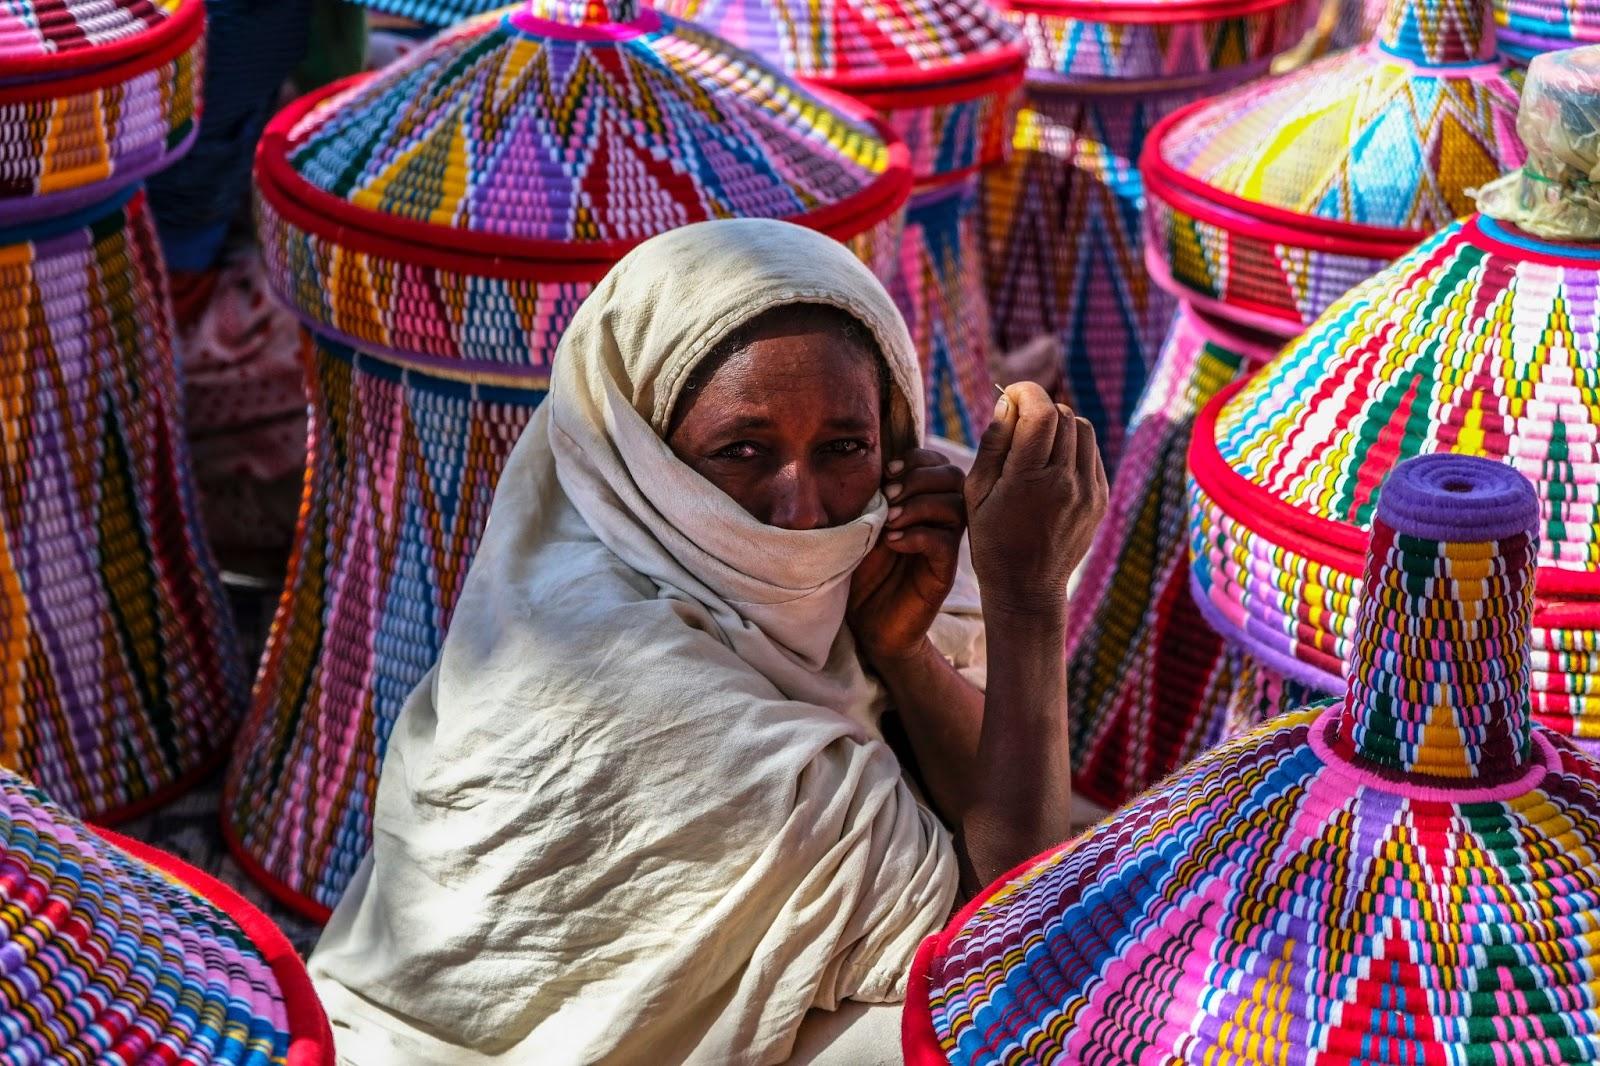 Ethiopian women selling baskets in the Aksum basket market